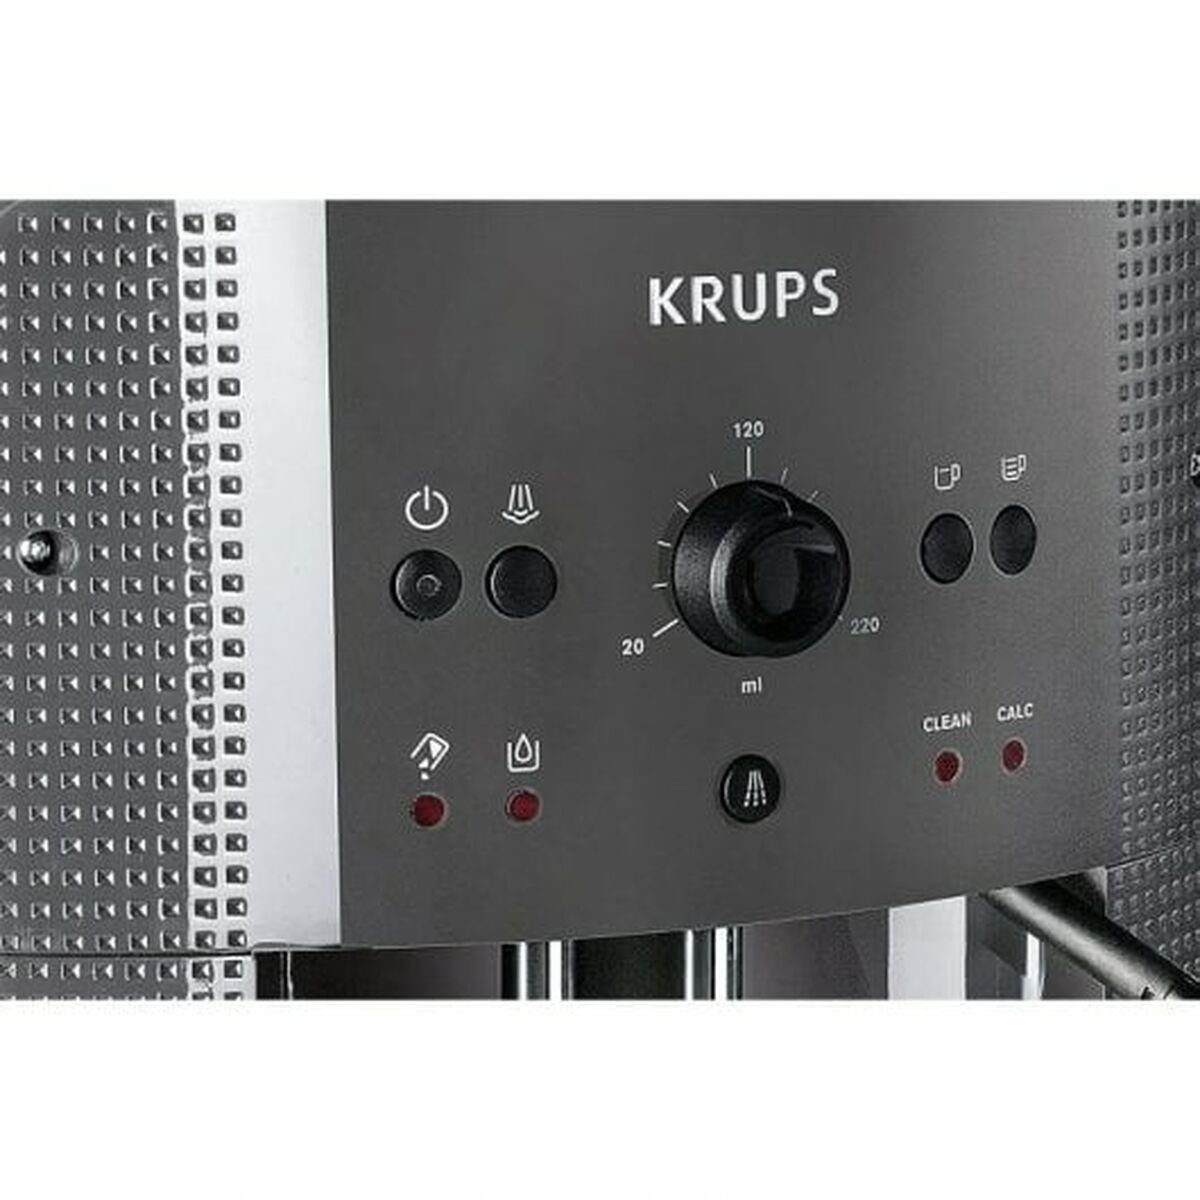 Krups Kaffeevollautomat Kaffeemaschine Superautomatische bar Krups W EA Schwarz 1450 15 810B C